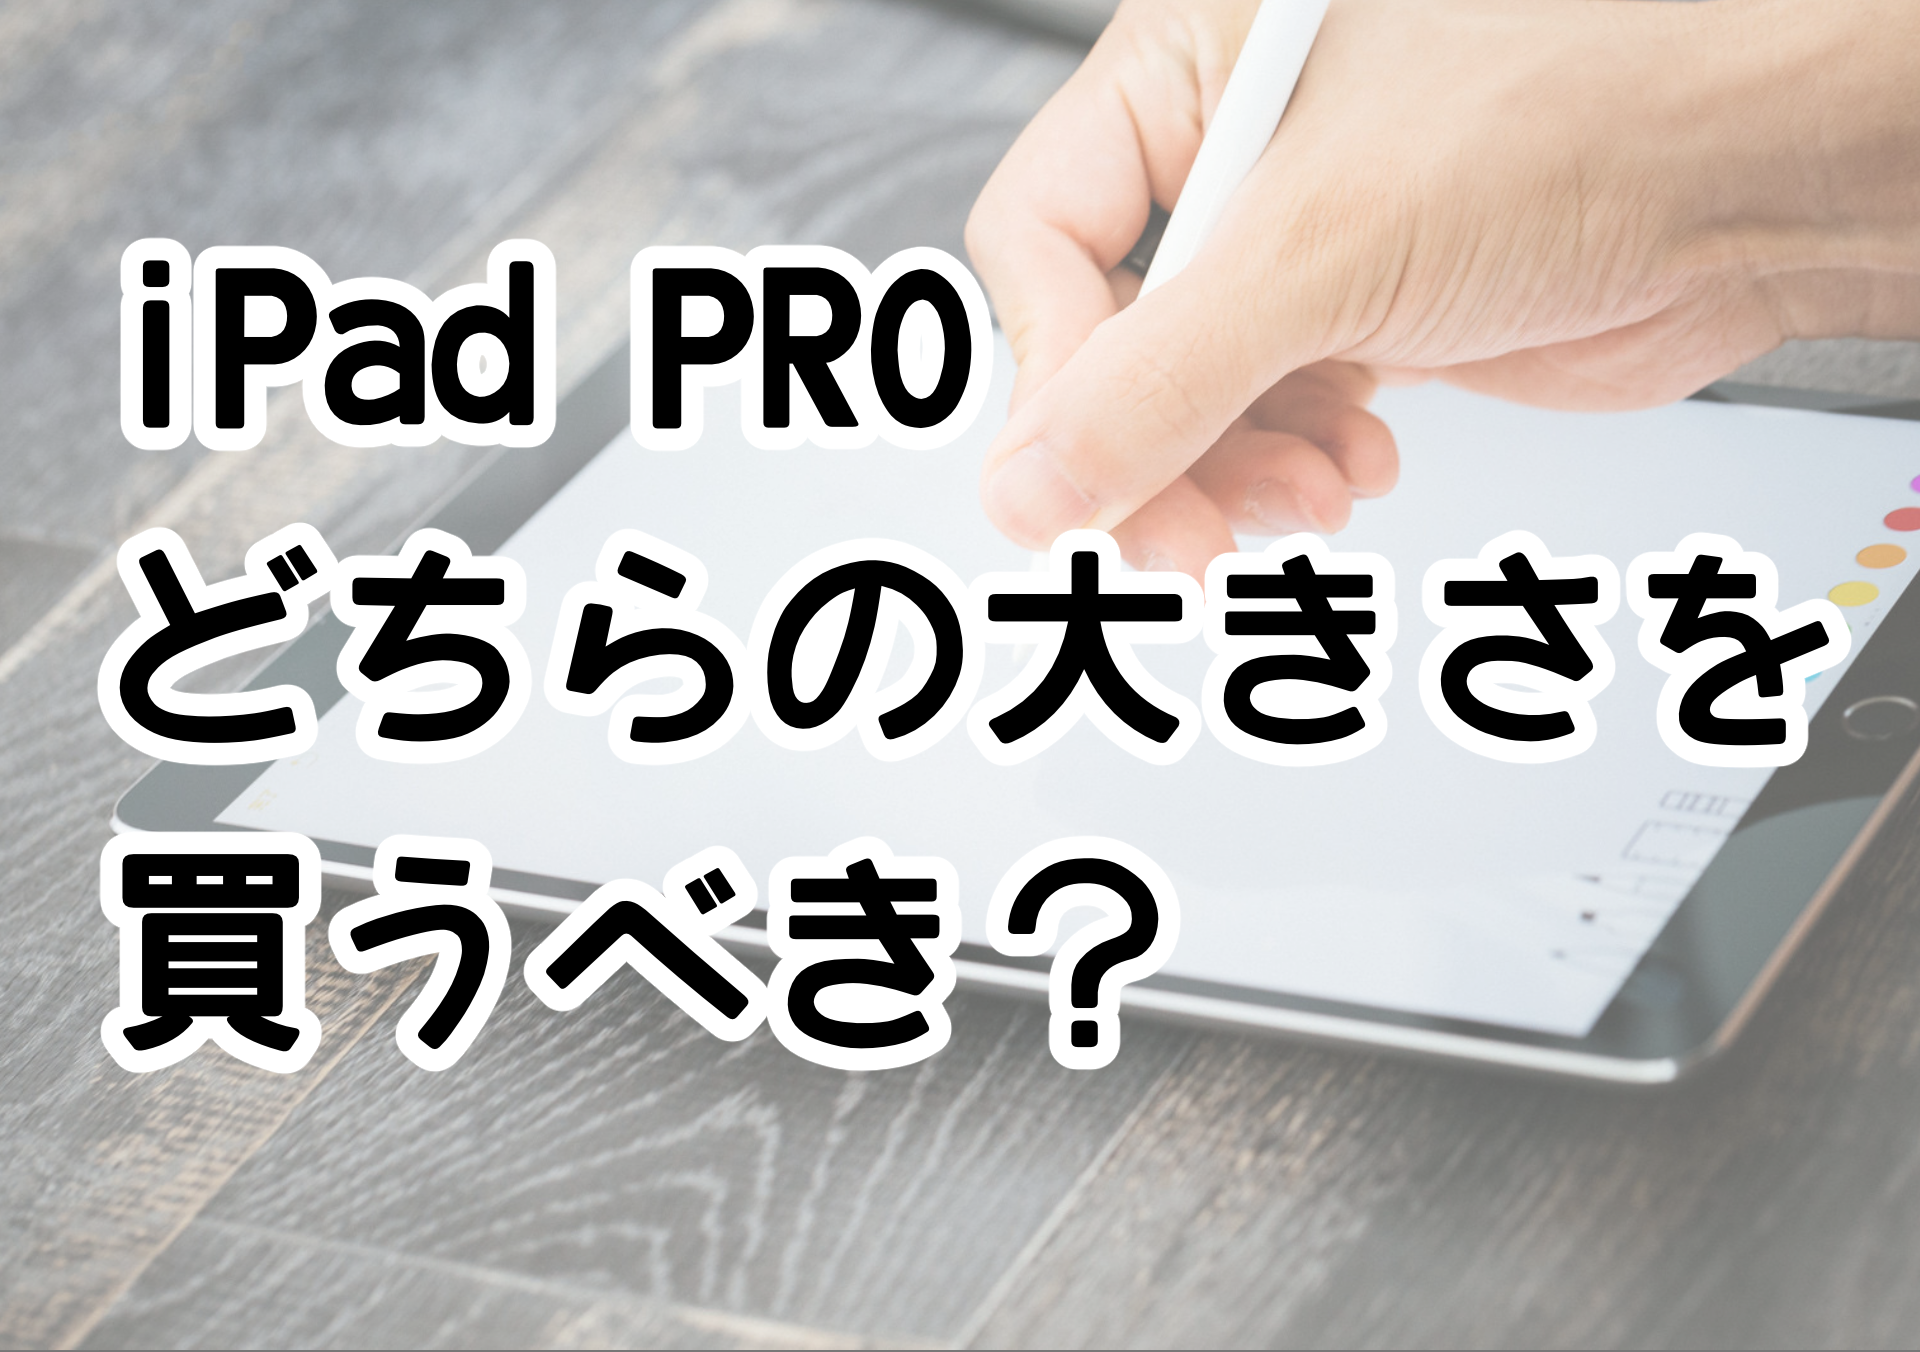 iPad PRO どちらの大きさを買うべき？